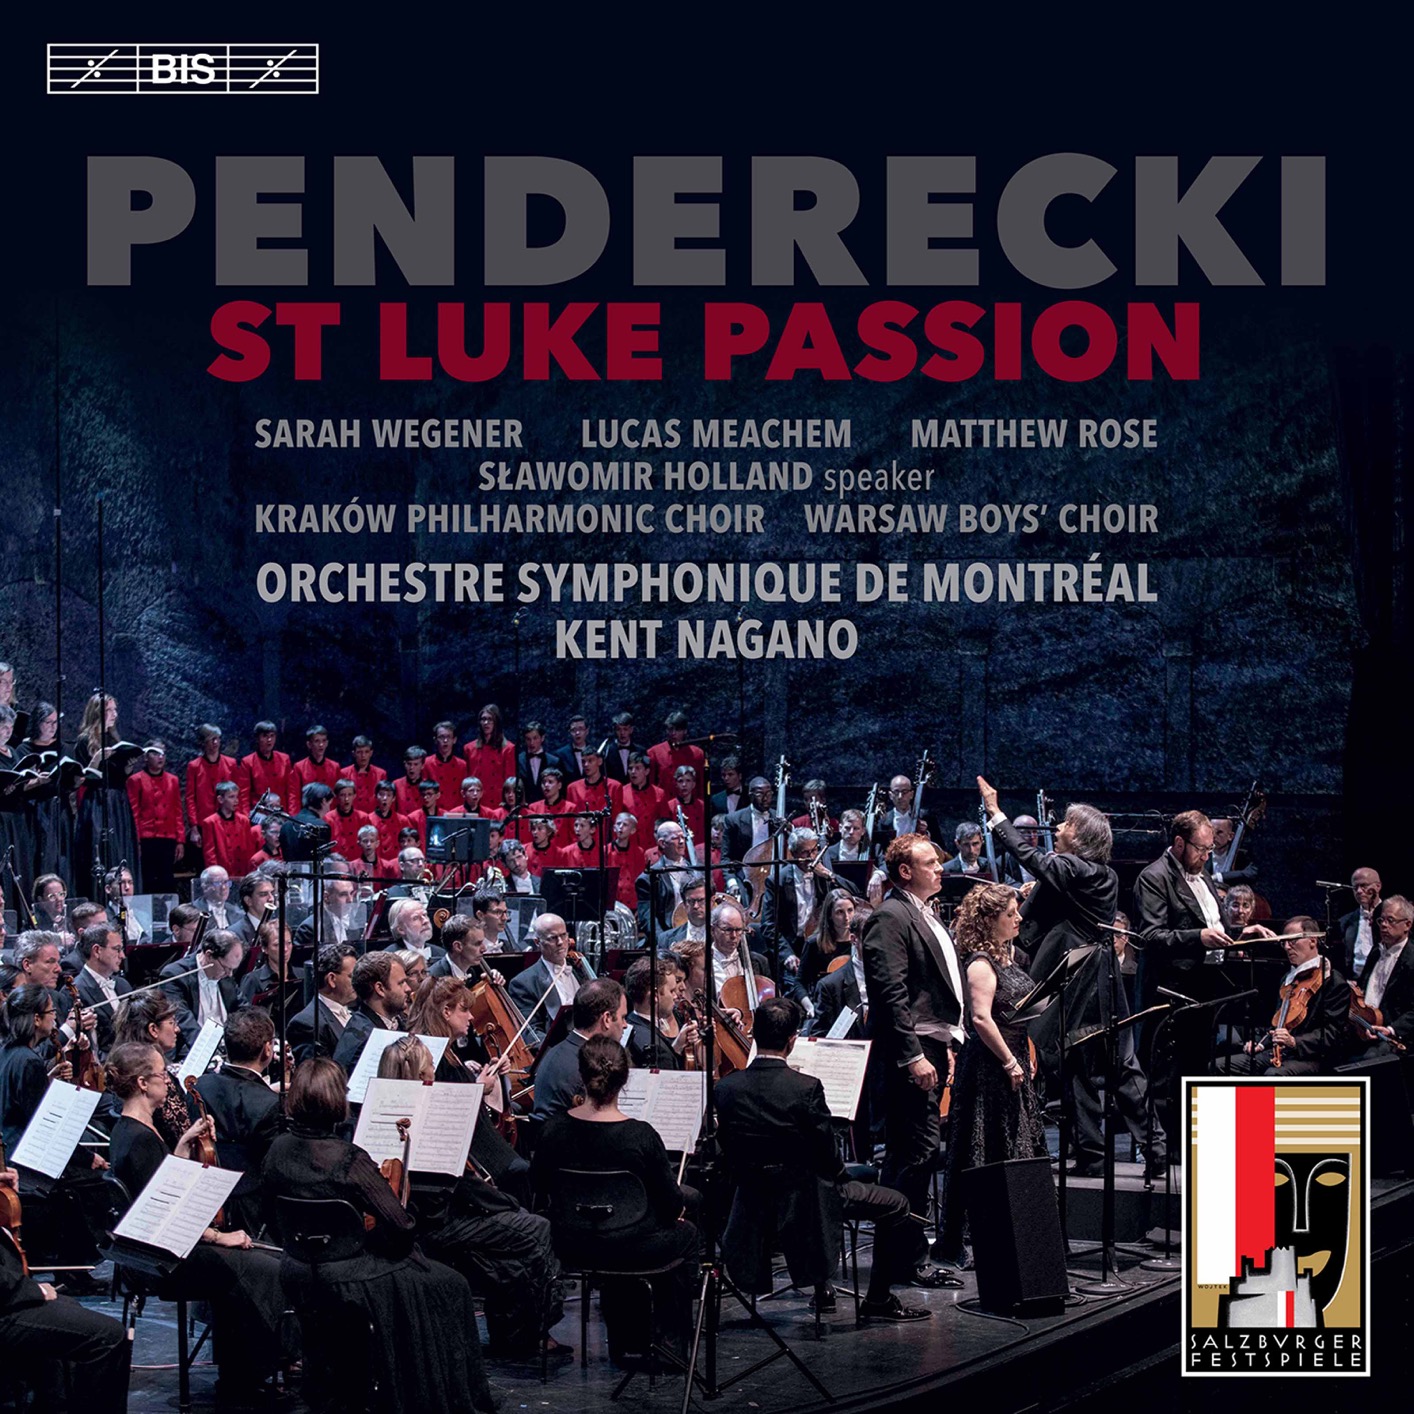 Orchestre Symphonique De Montreal & Kent Nagano – Penderecki – St. Luke Passion (Live) (2020) [FLAC 24bit/96kHz]